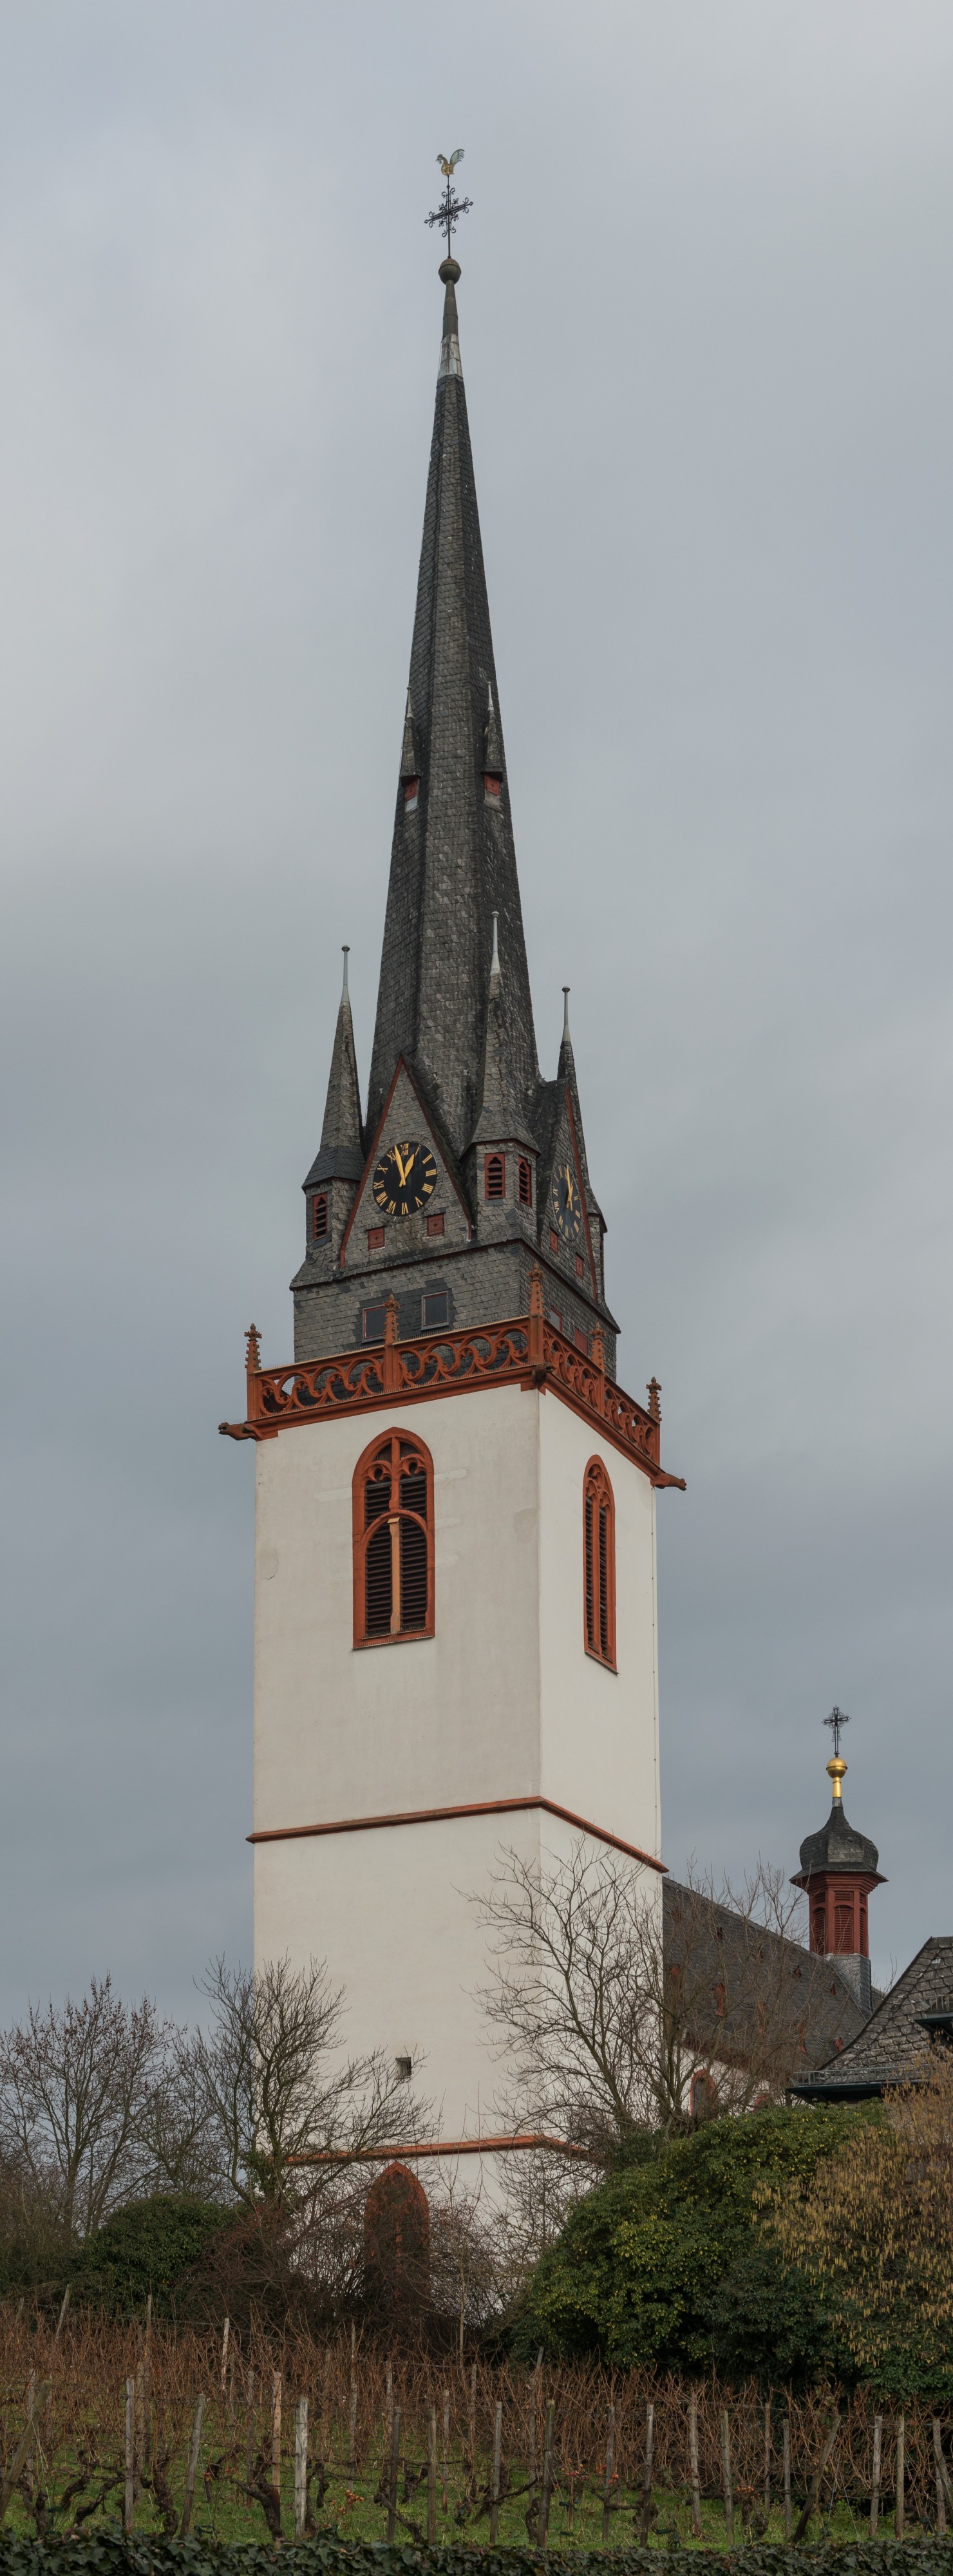 Tower of St. Markus, Erbach im Rheingau, Southwest view 20150123 5